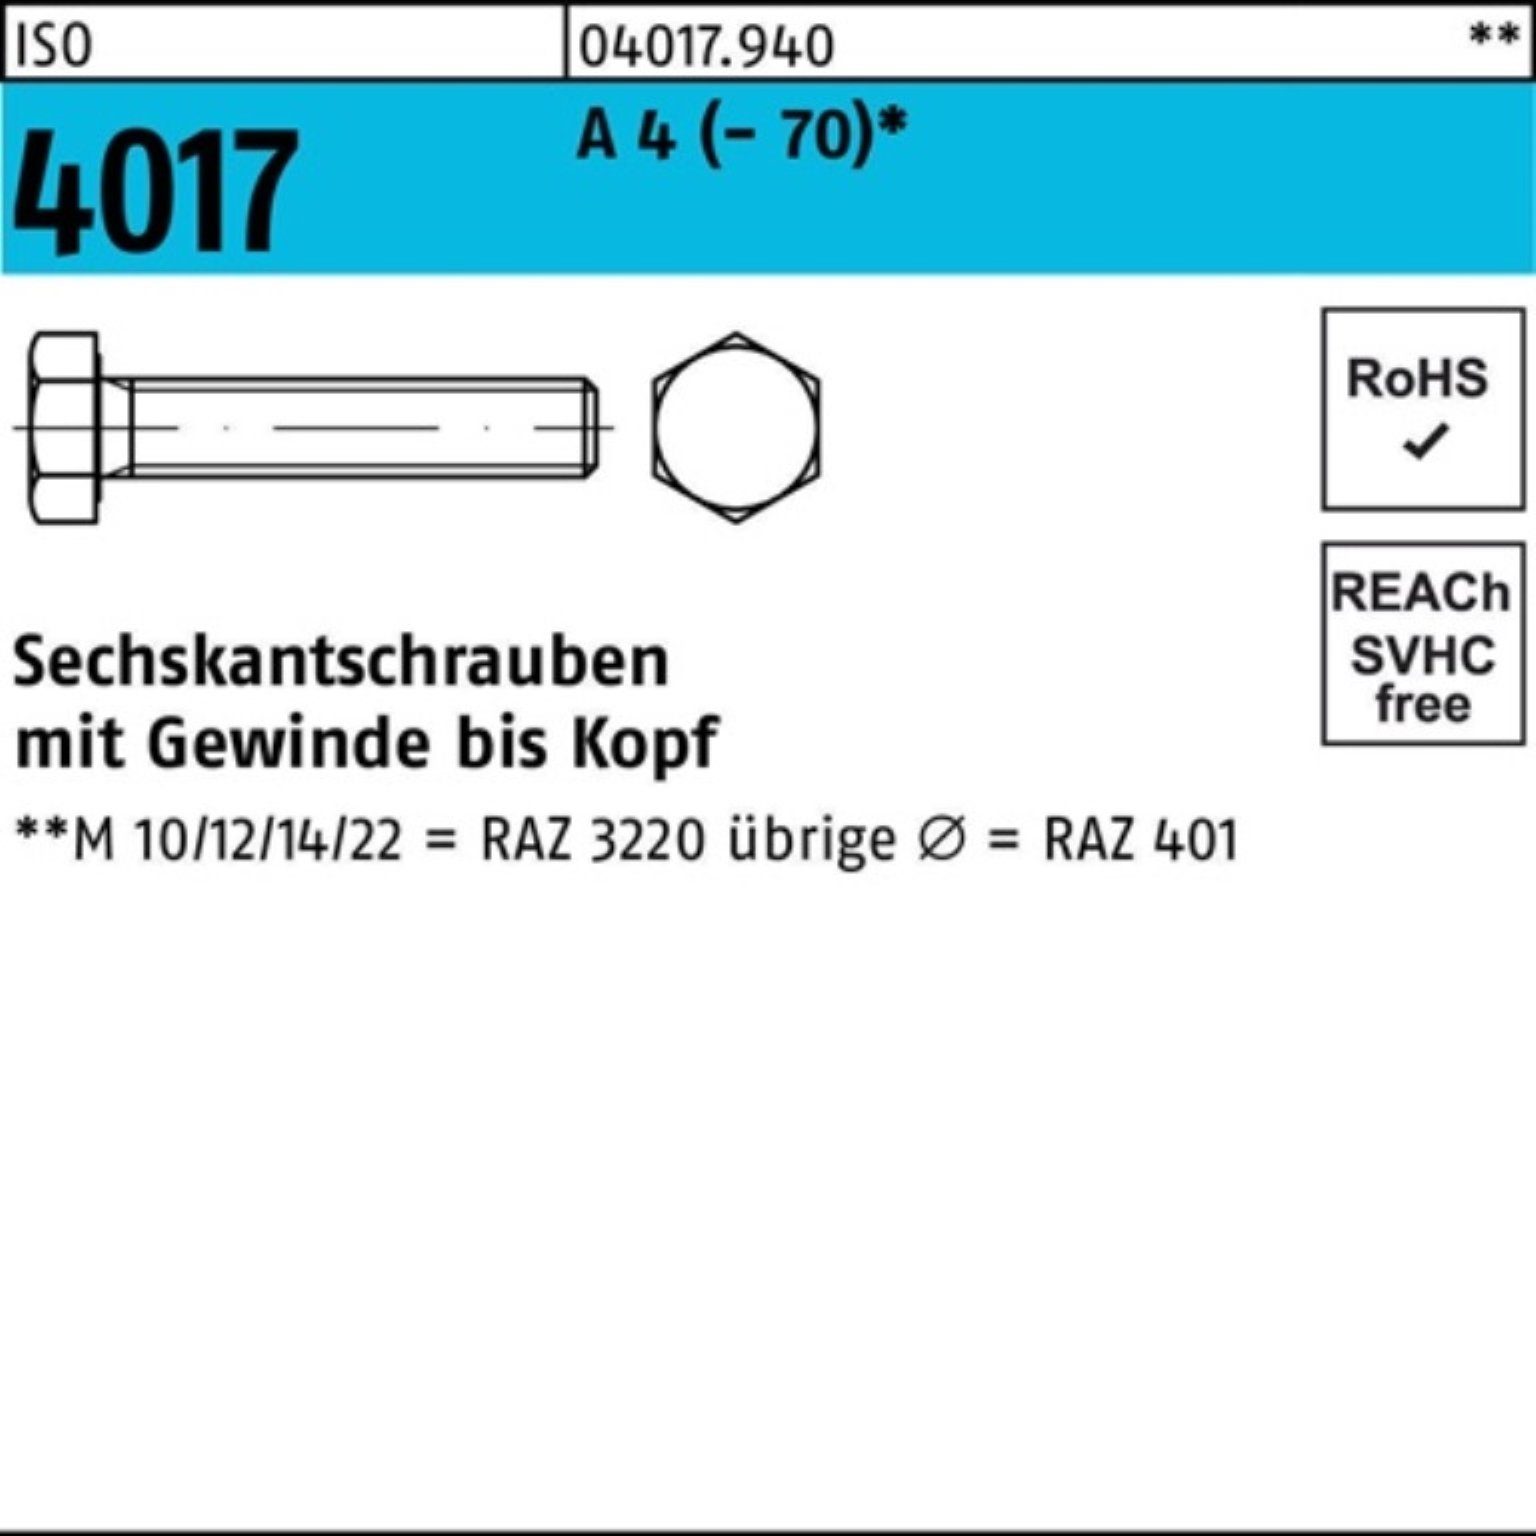 Bufab Sechskantschraube 100er Pack Sechskantschraube ISO 4017 VG M10x 100 A 4 (70) 50 Stück